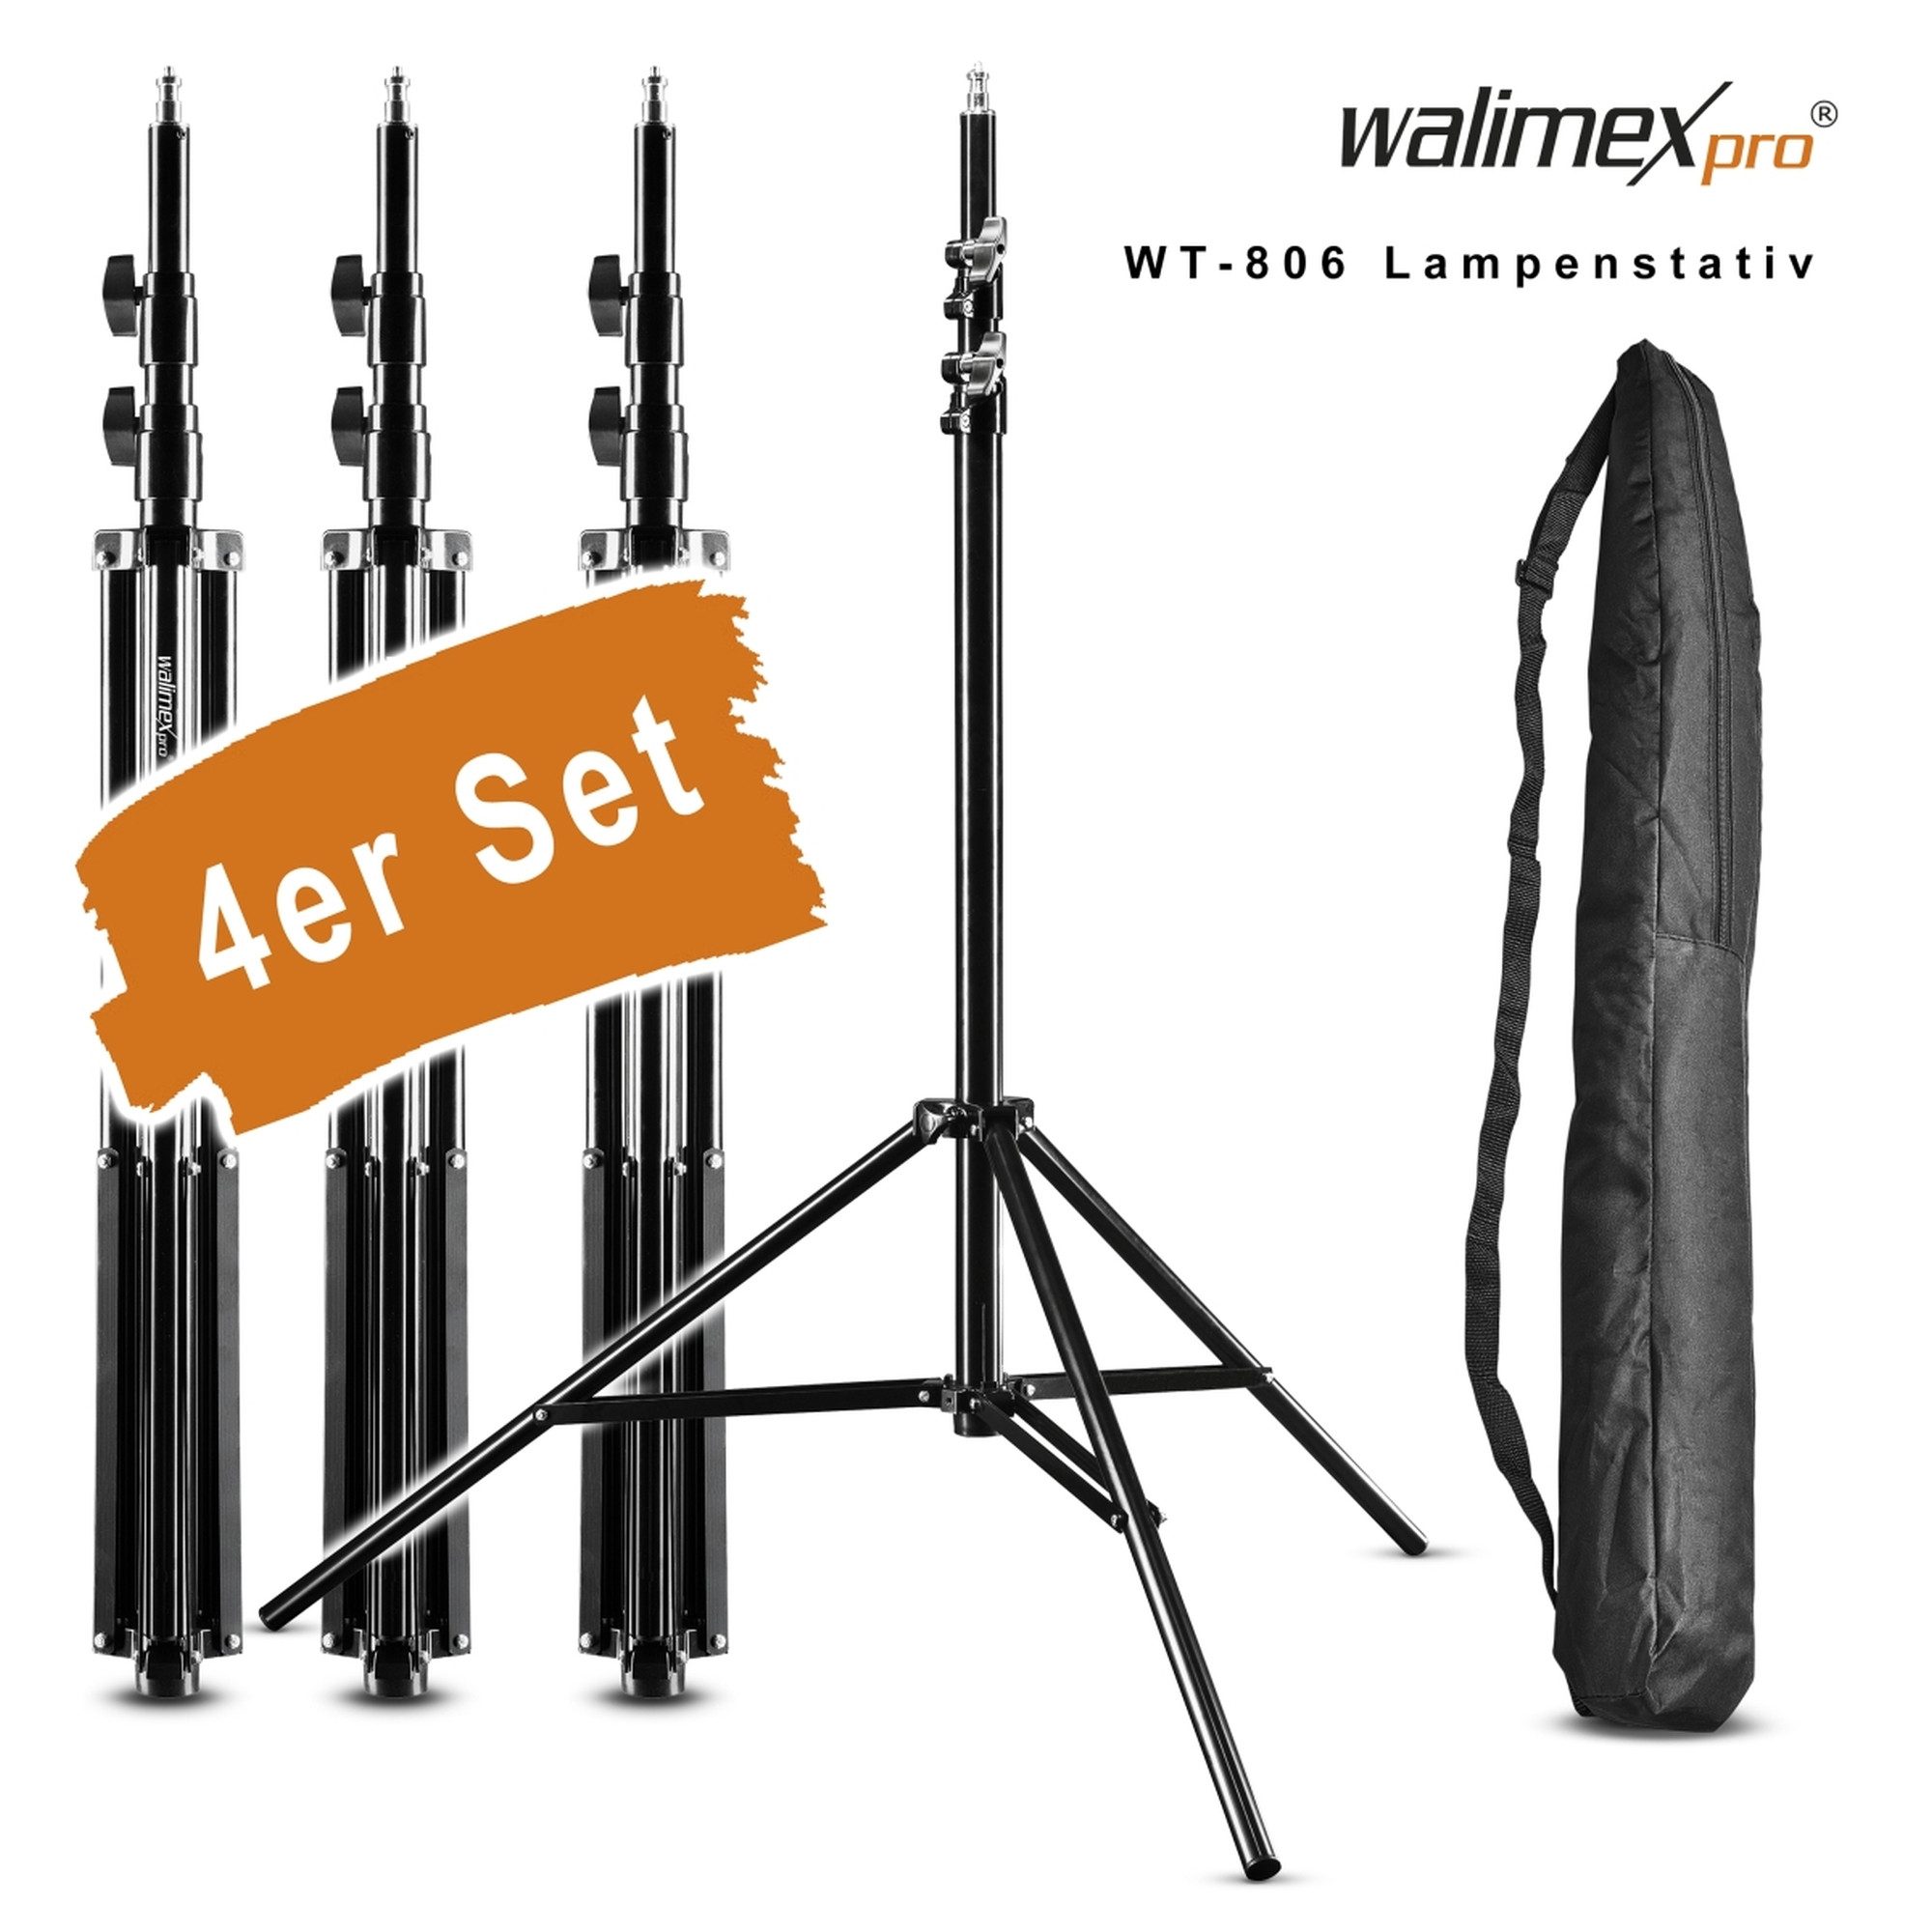 Walimex Pro WT-806 Lampenstativ 256cm 4er Set Lampenstativ